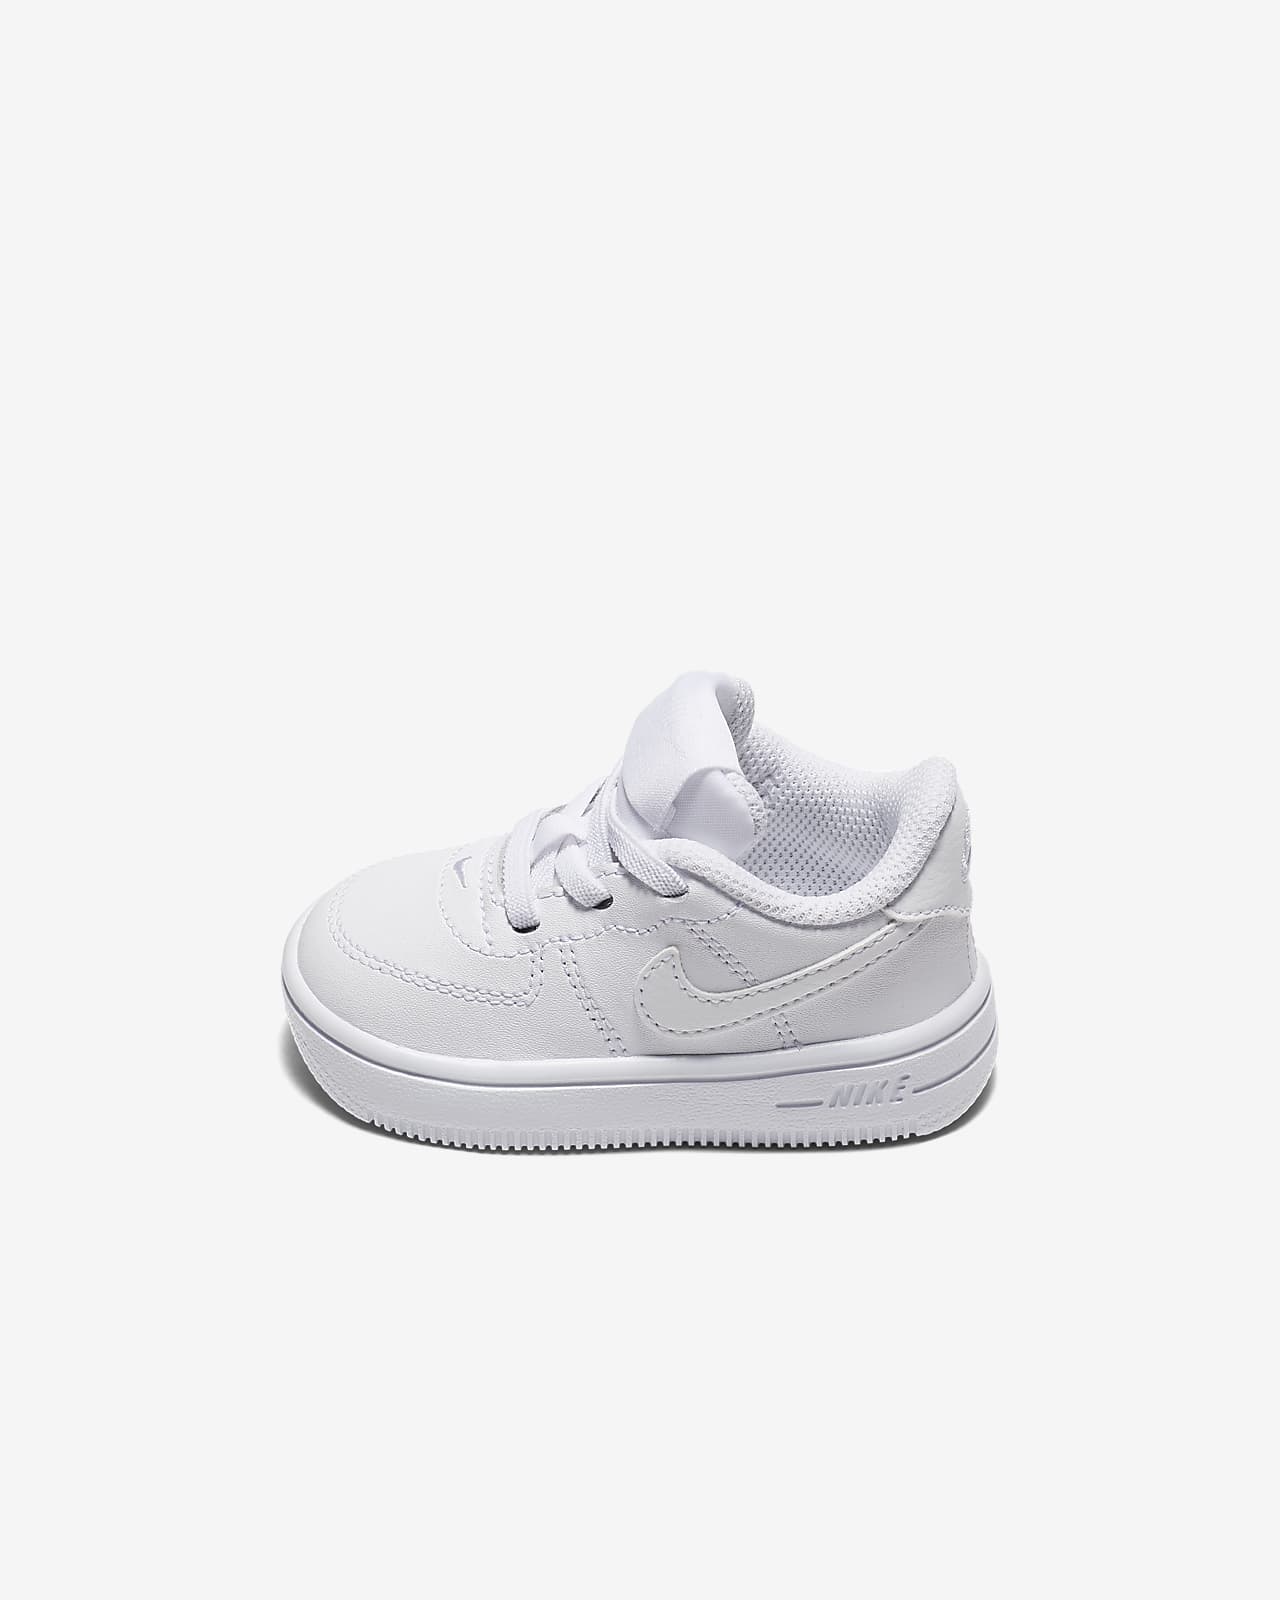 Nike Force 1 '18 Baby \u0026 Toddler Shoe 